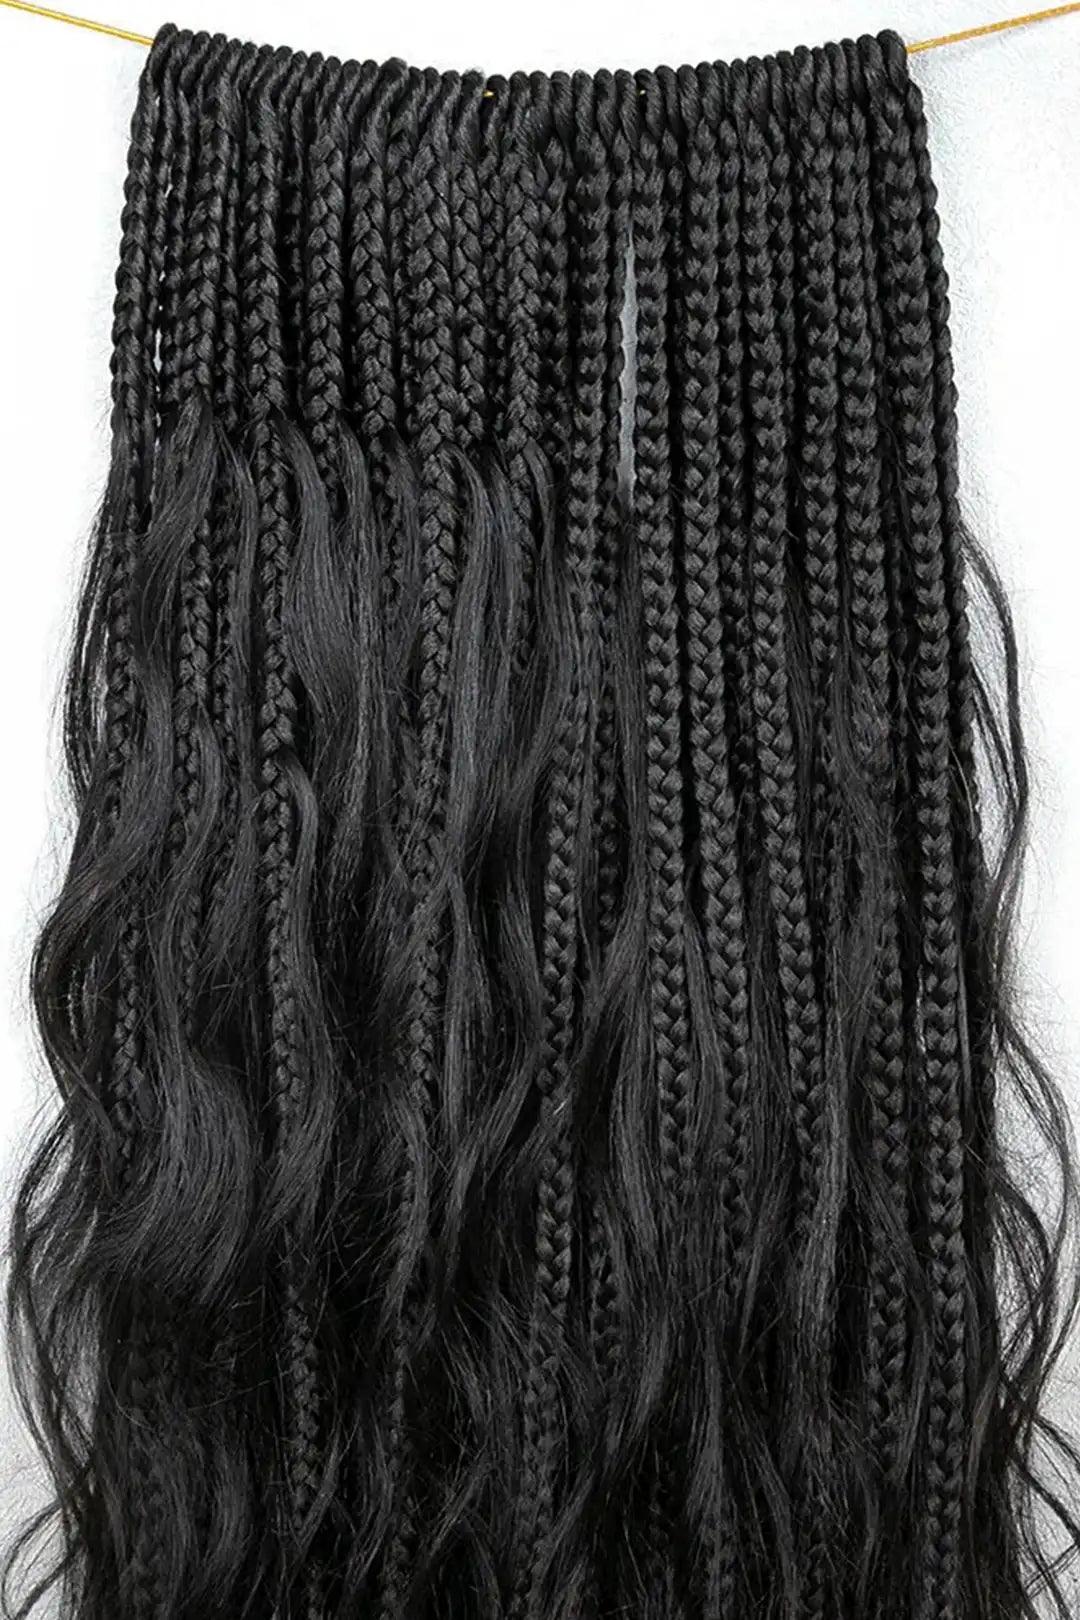 Crochet Mermaid Braids with Human Hair Curls Pre-Looped Loose Wave